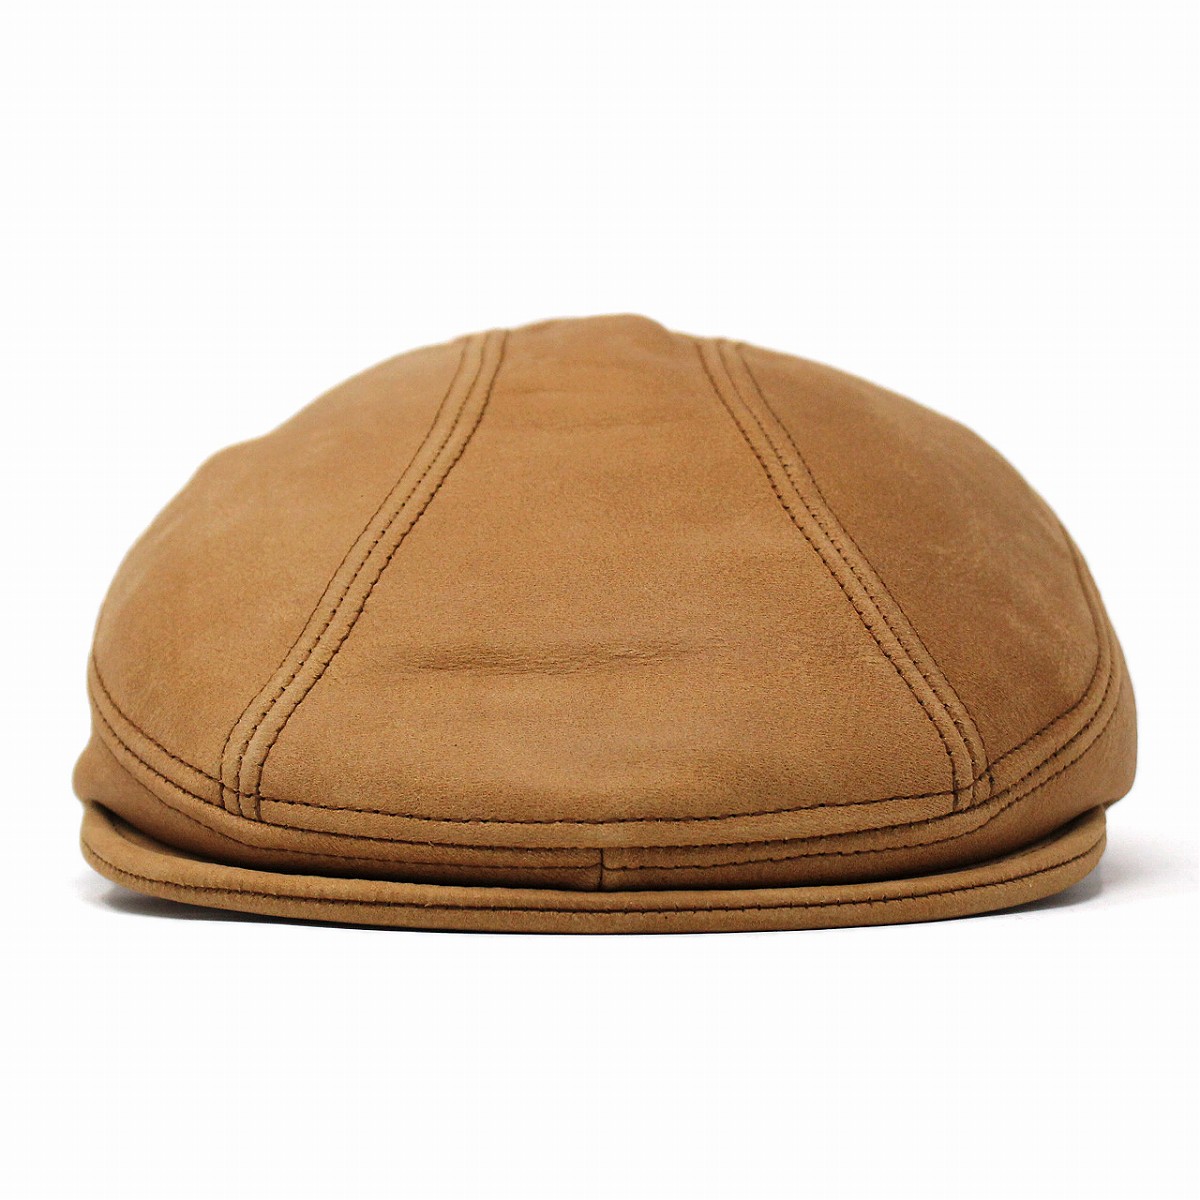 【楽天市場】ハンチング レザー メンズ 帽子 ニューヨークハット オールド アメカジ ヴィンテージ 9214 Vintage Leather